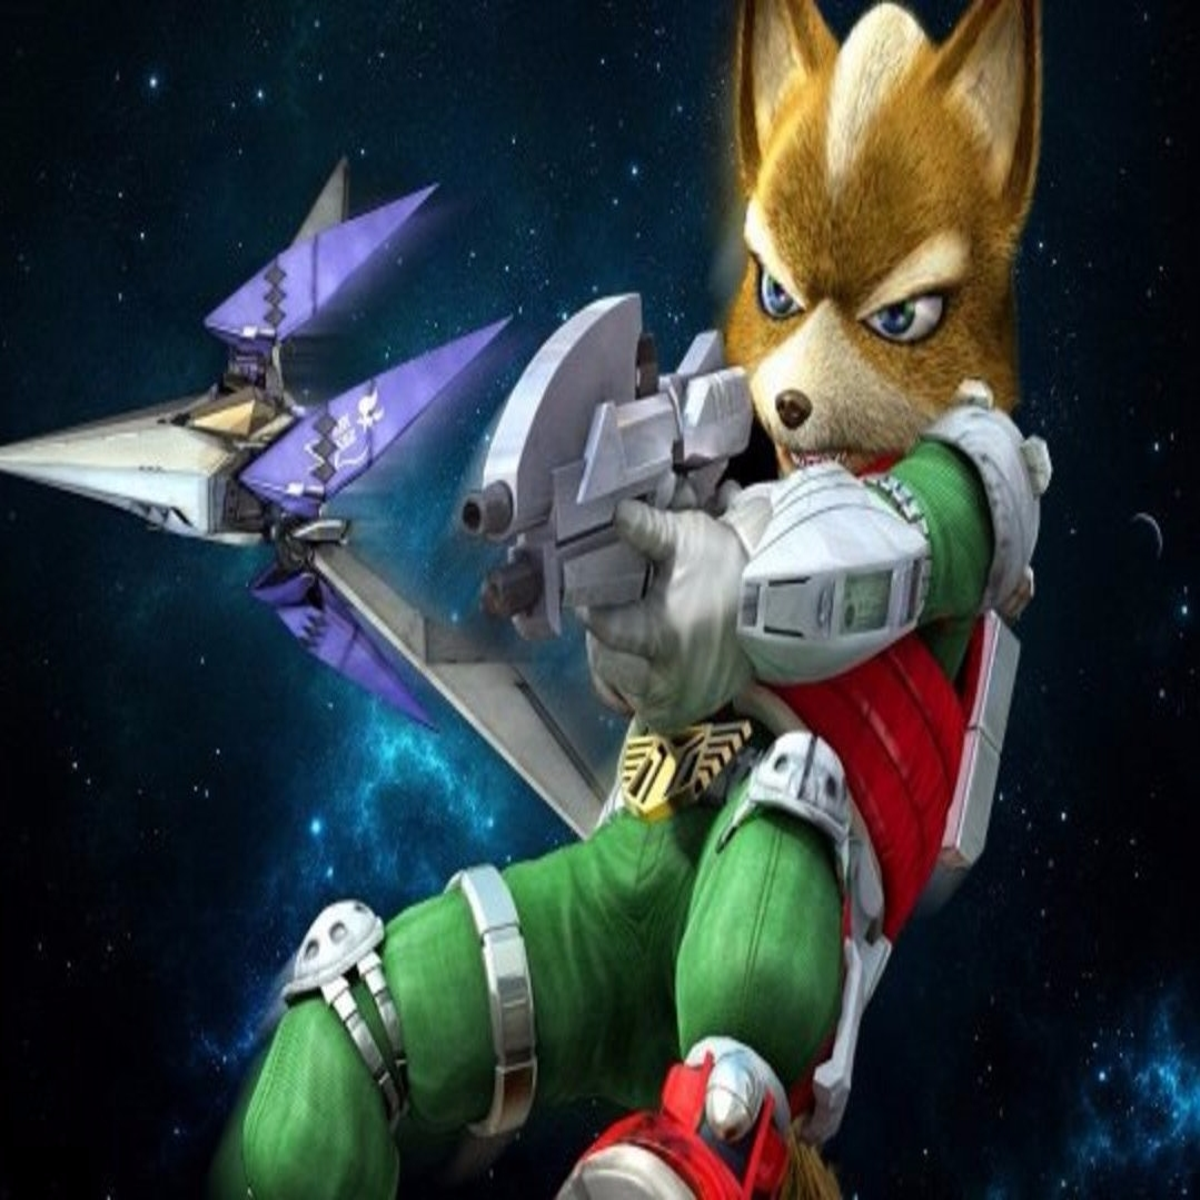 Star Fox Zero - Pre-Owned (Wii U) 